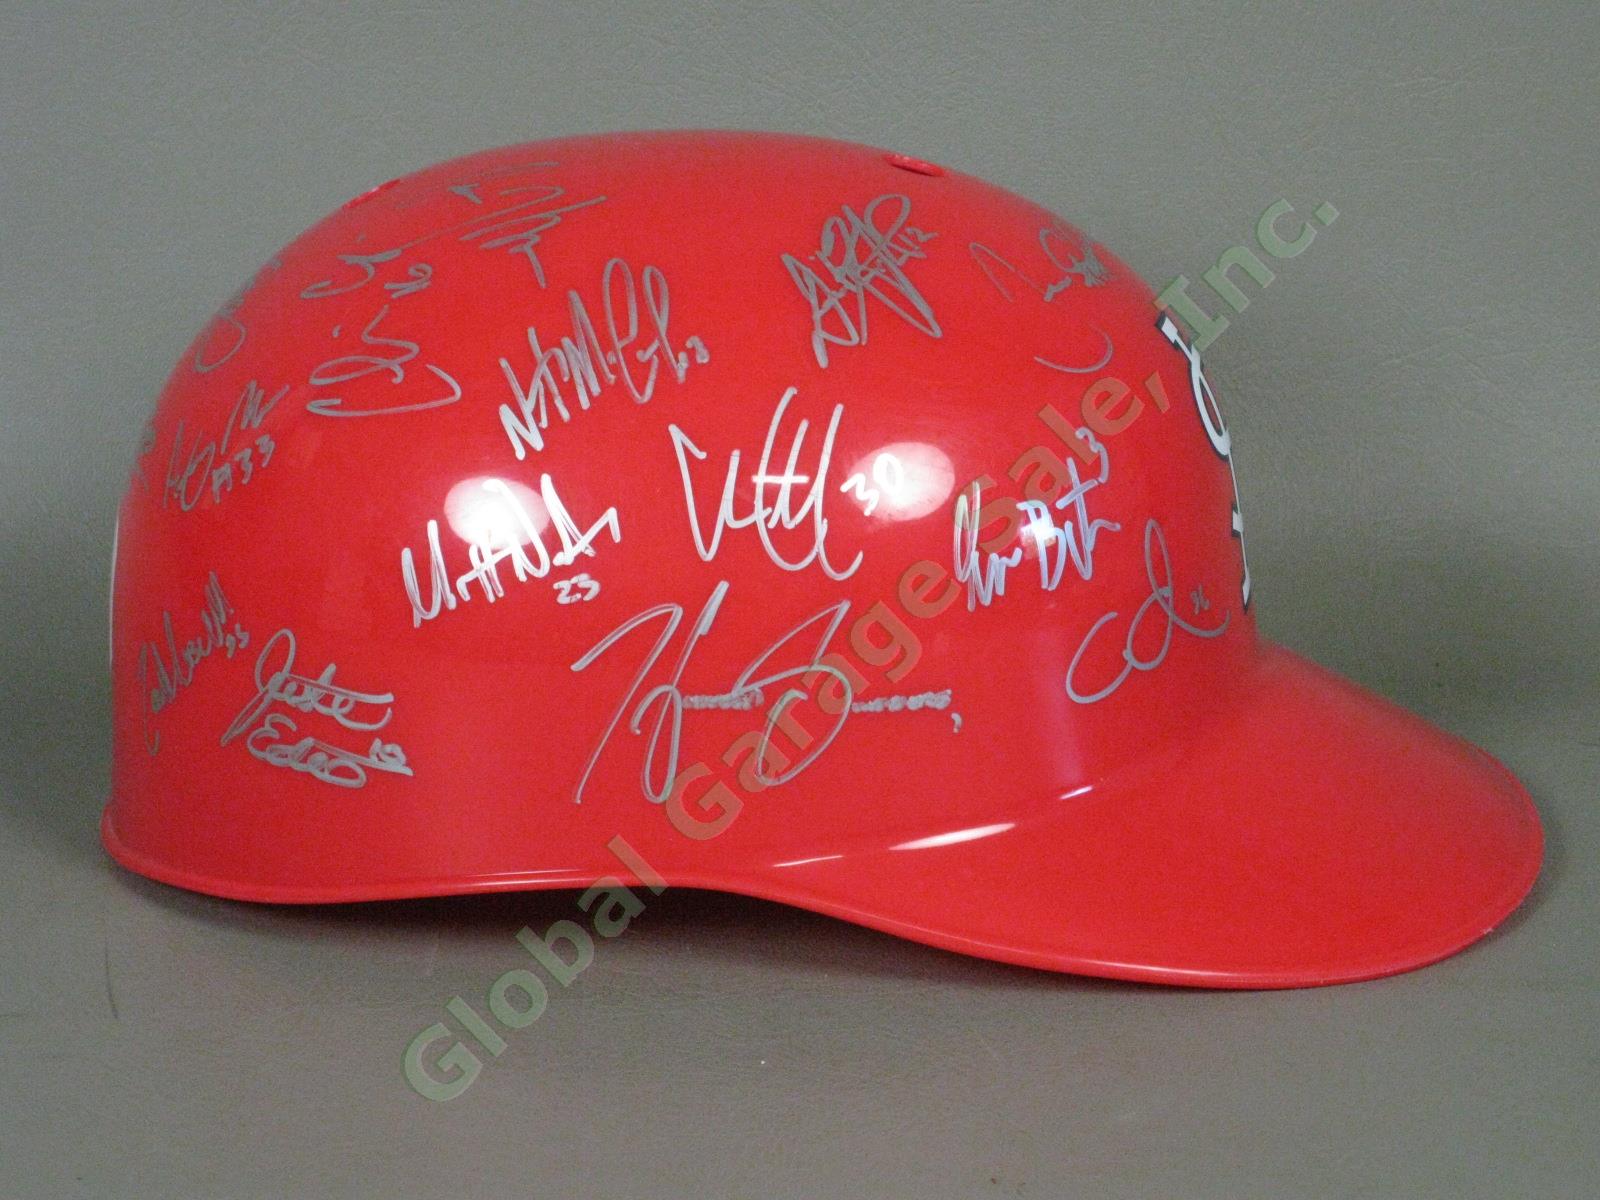 2010 Batavia Muckdogs Team Signed Baseball Helmet NYPL St. Louis Cardinals NR 1